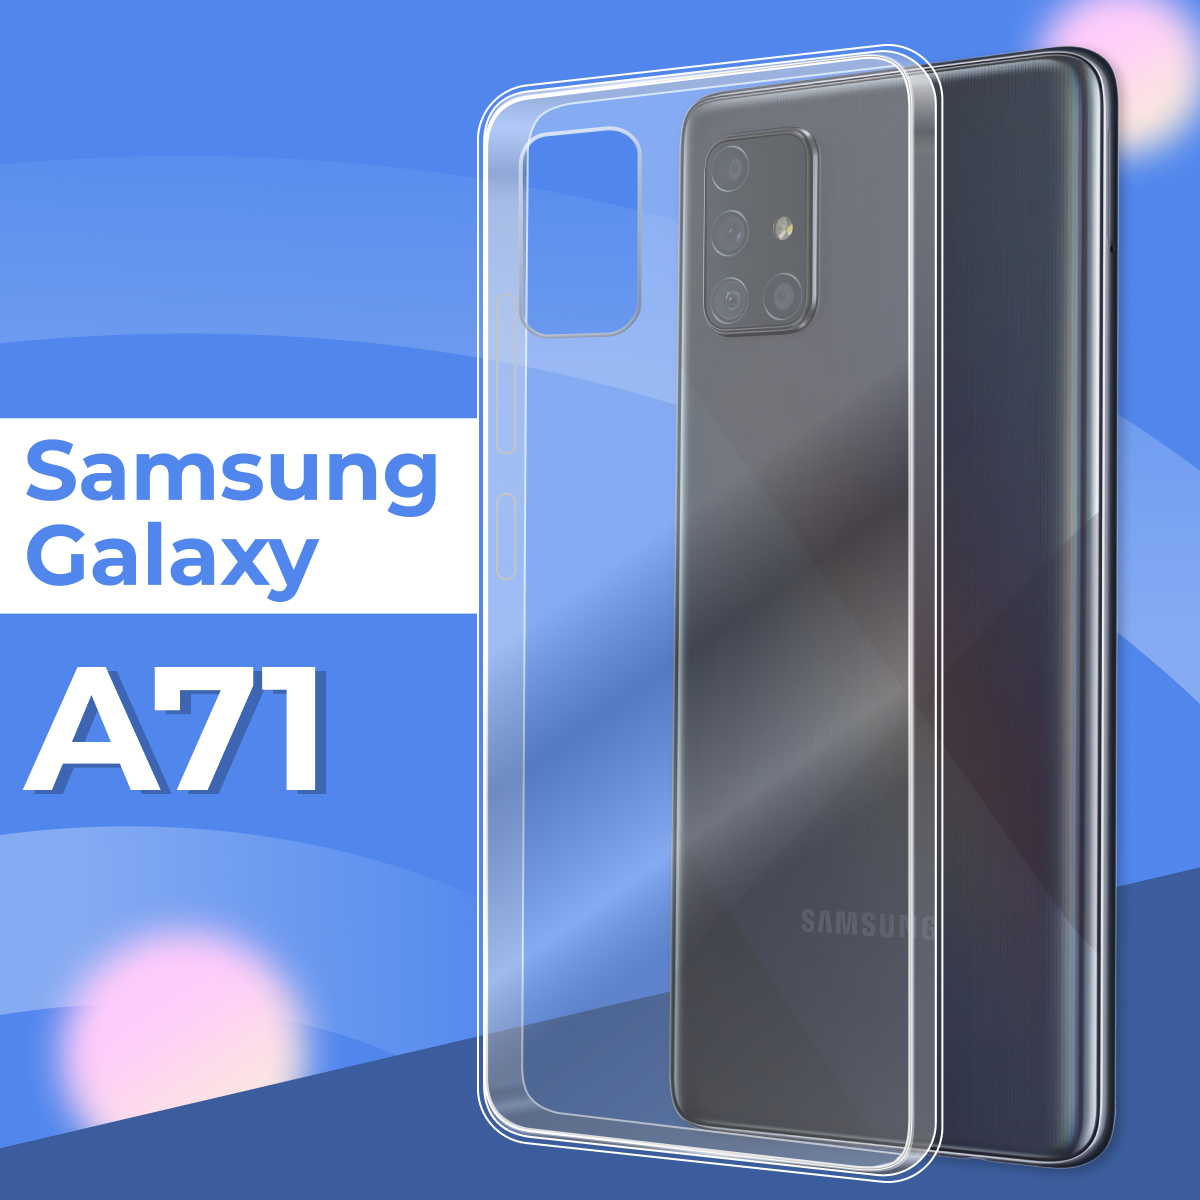 Ультратонкий силиконовый чехол для телефона Samsung Galaxy A71 / Прозрачный защитный чехол для Самсунг Галакси А71 / Premium силикон